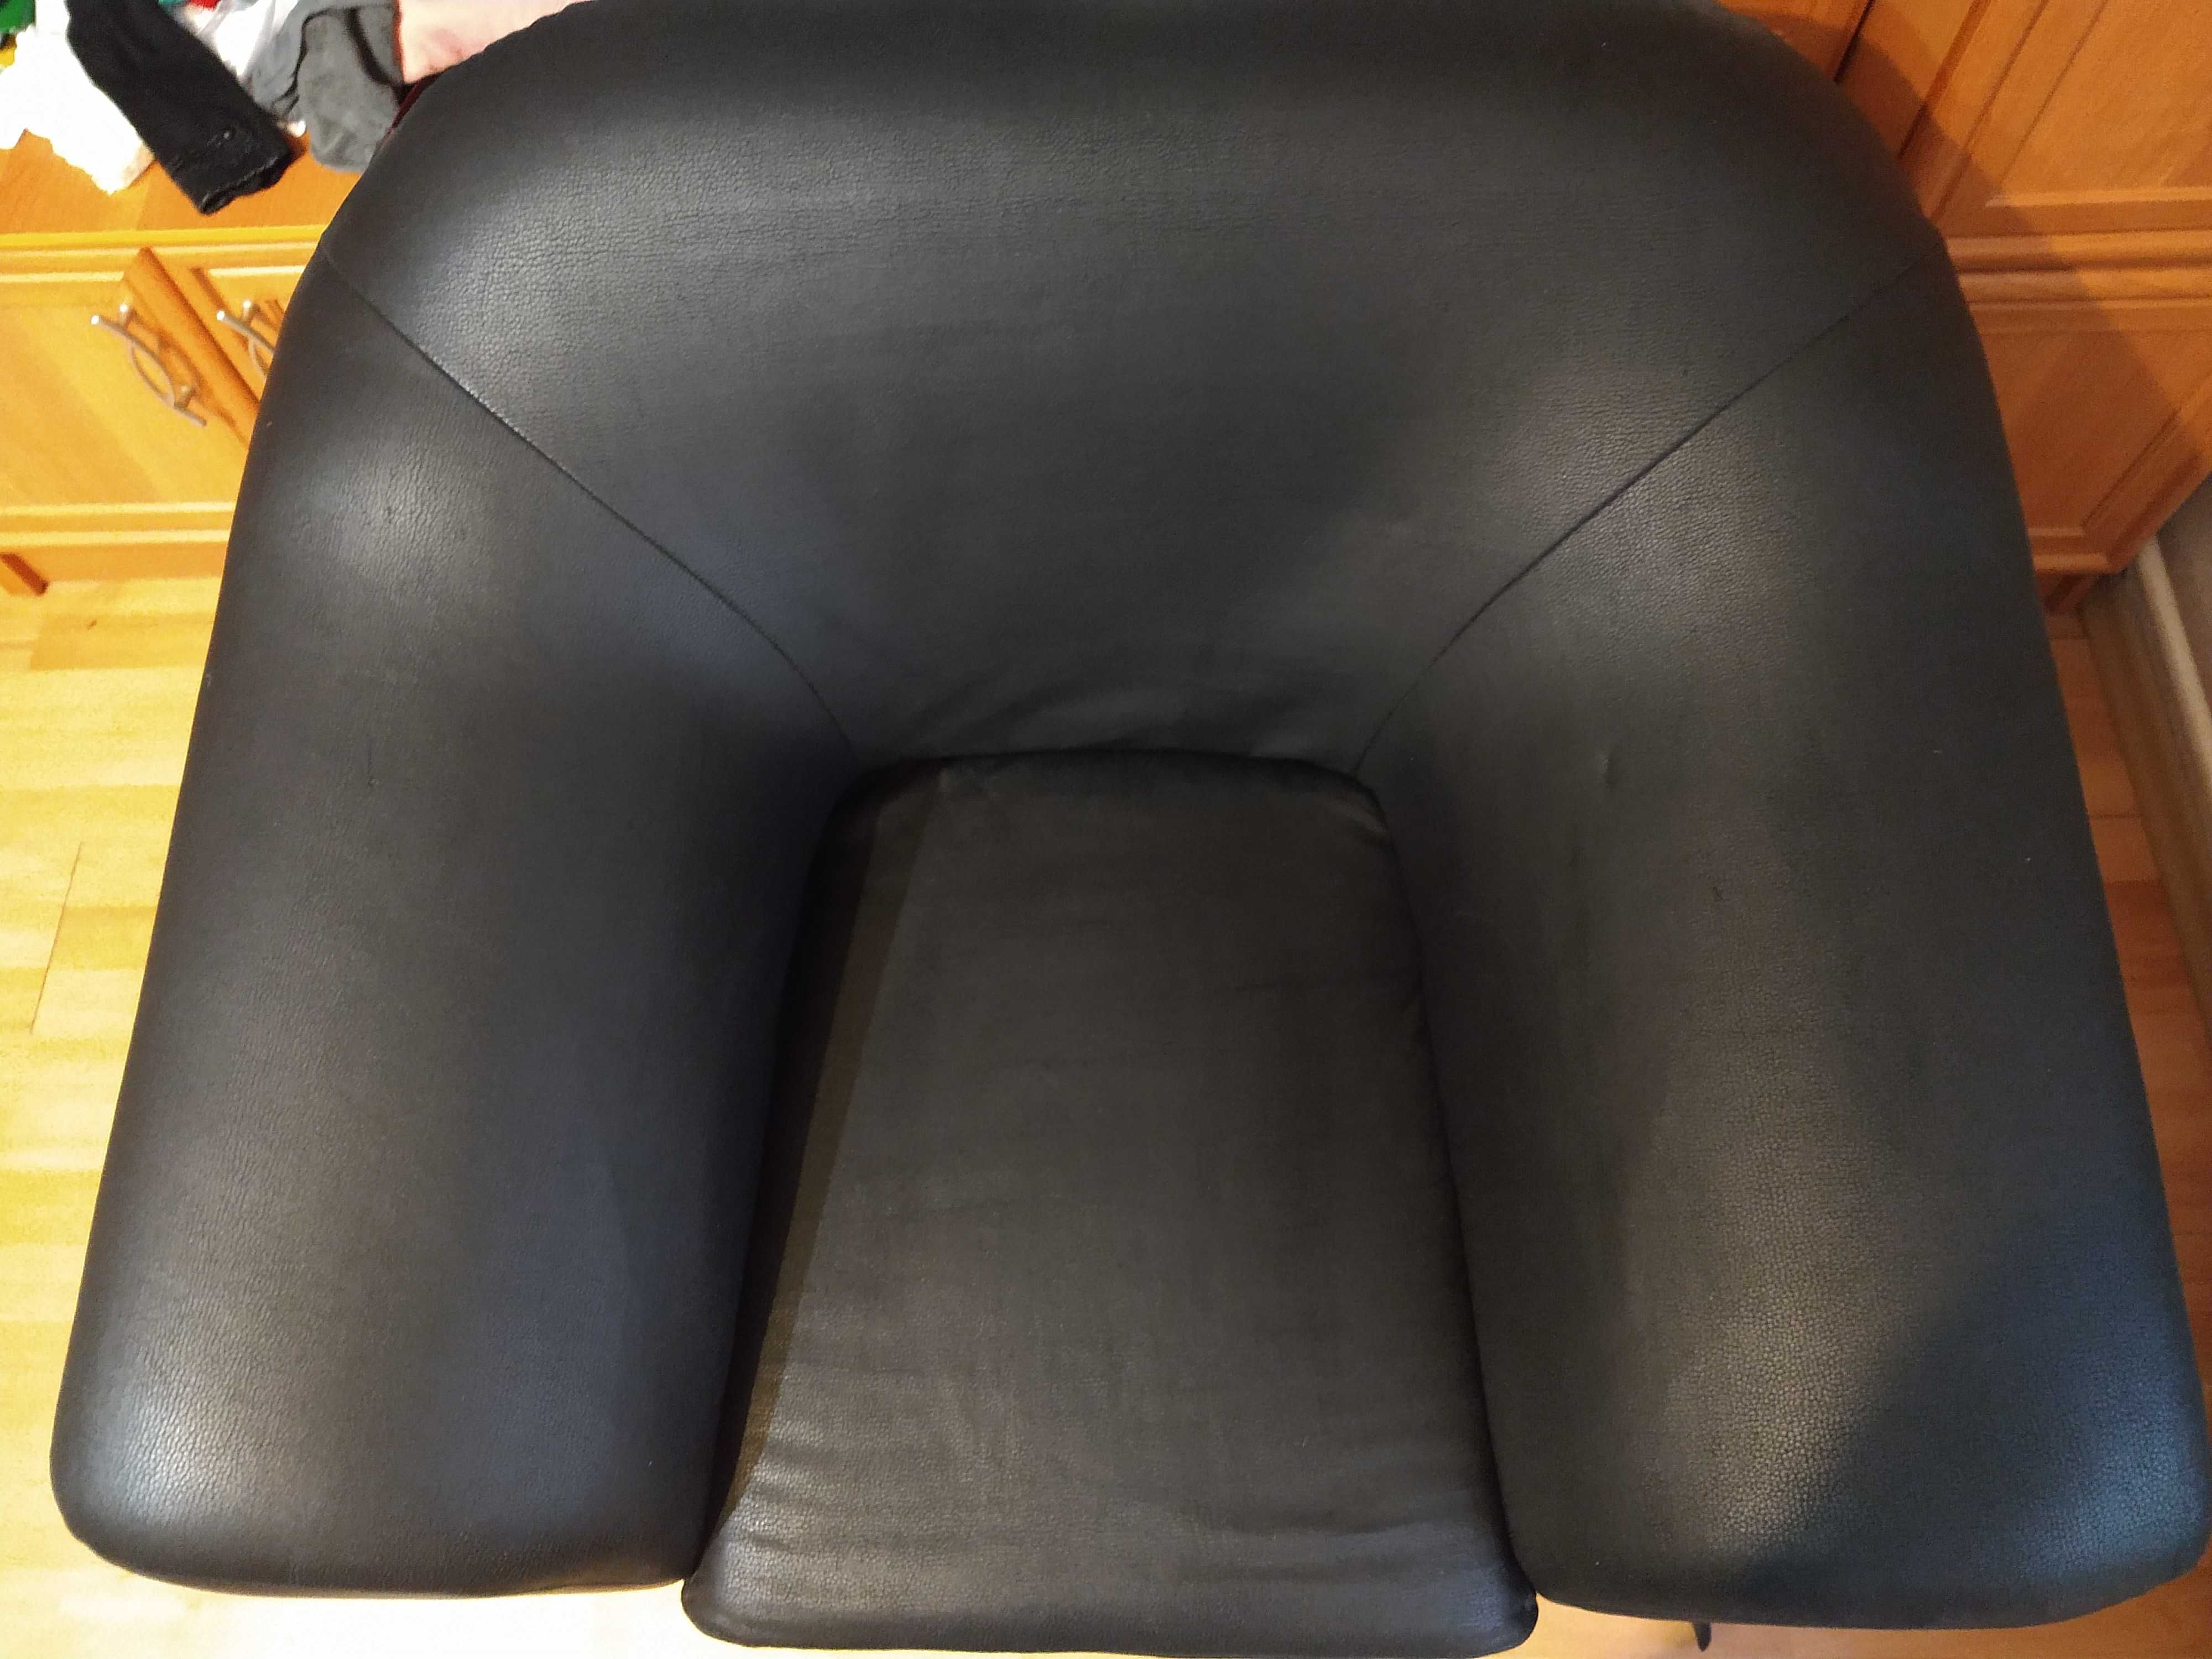 Fotel czarny, bardzo wygodny